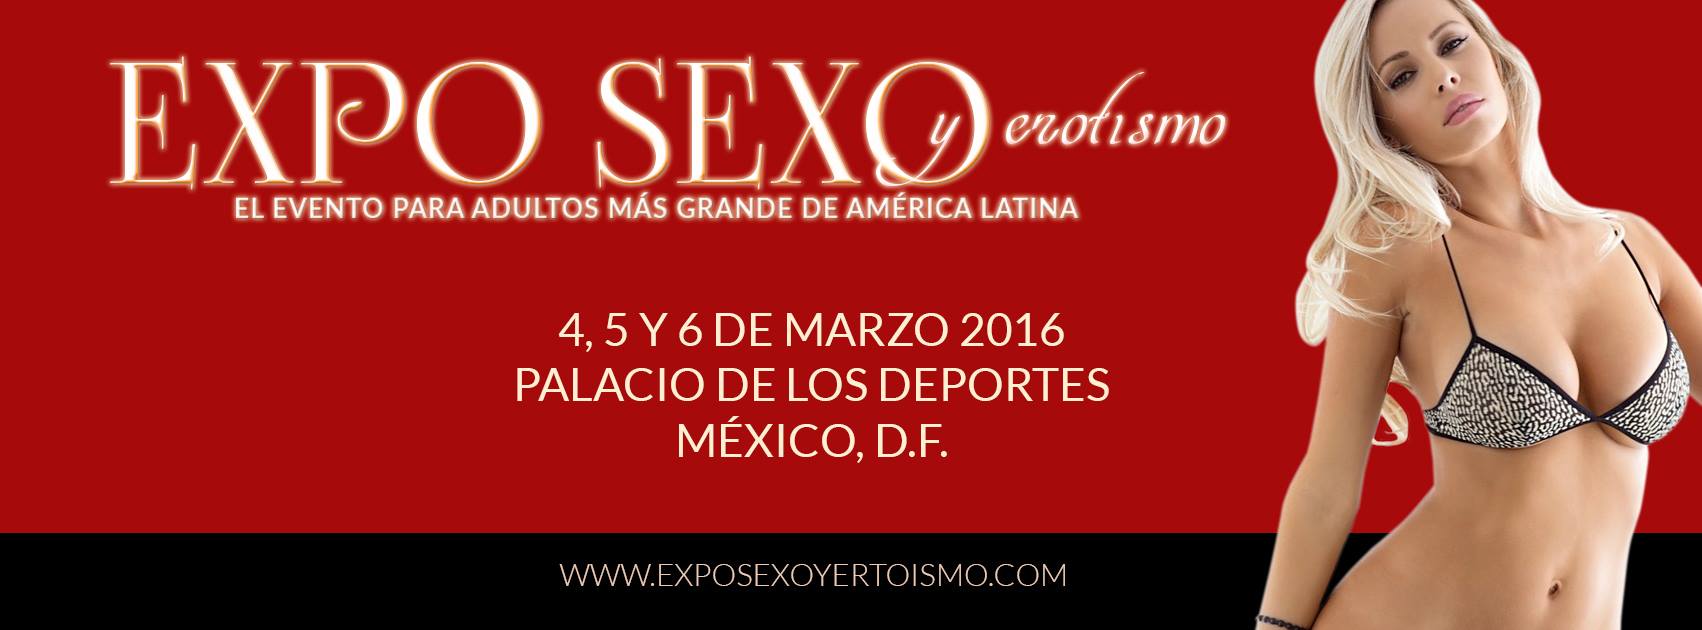 Expo Sexo Erotismo 2016 Pic Advance 2